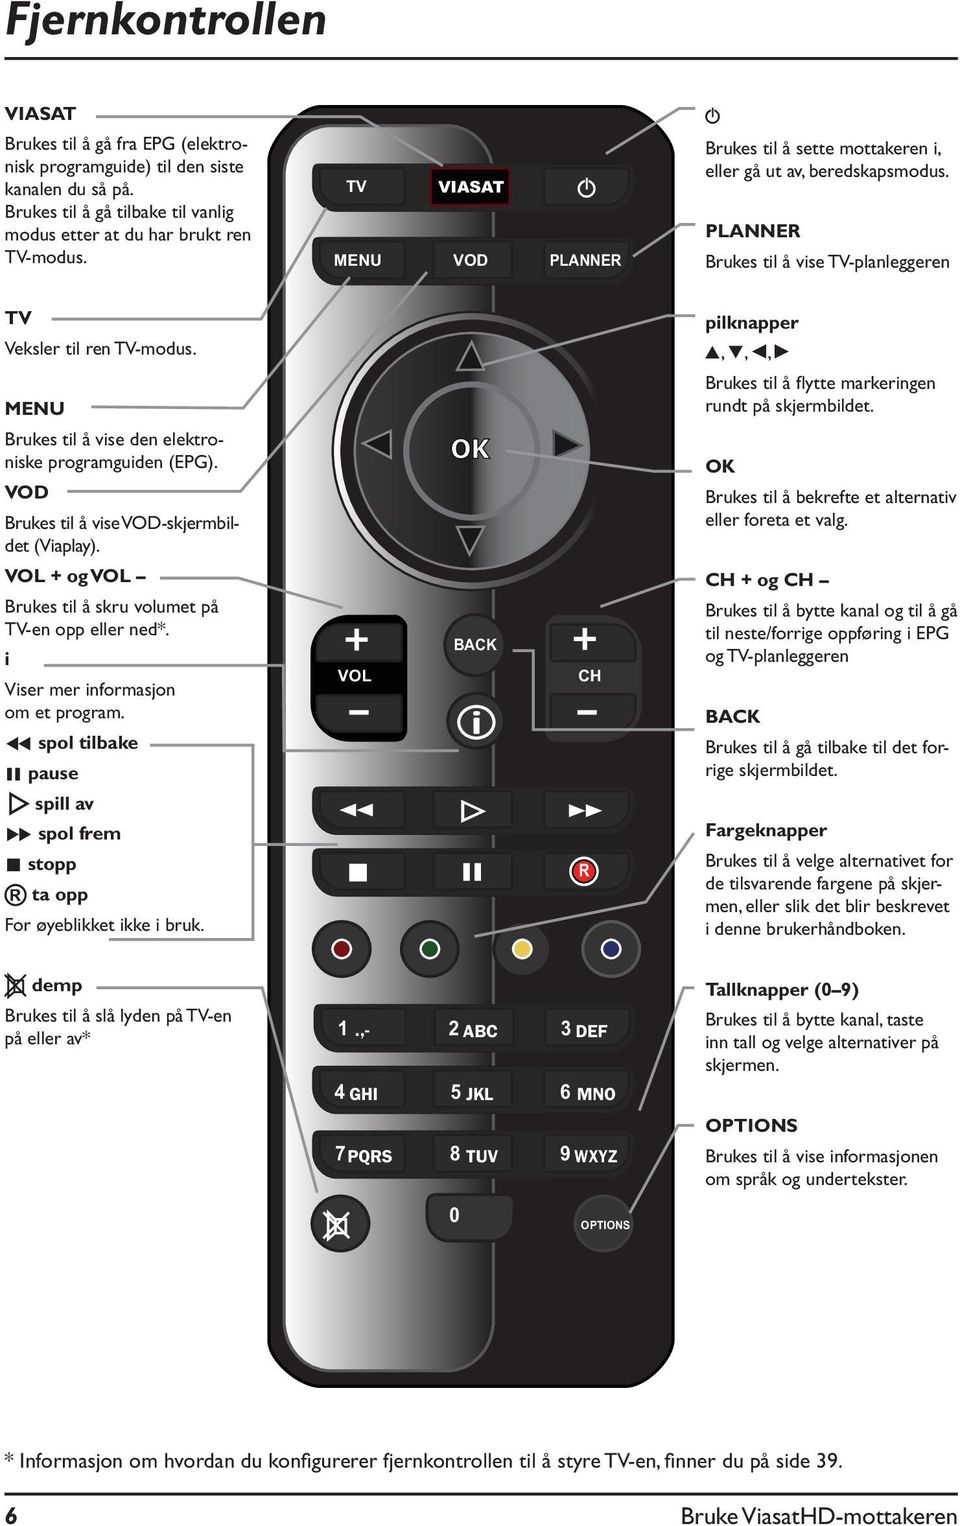 MENU Brukes til å vise den elektroniske programguiden (EPG). VOD Brukes til å vise VOD-skjermbildet (Viaplay). VOL + og VOL Brukes til å skru volumet på TV-en opp eller ned*.